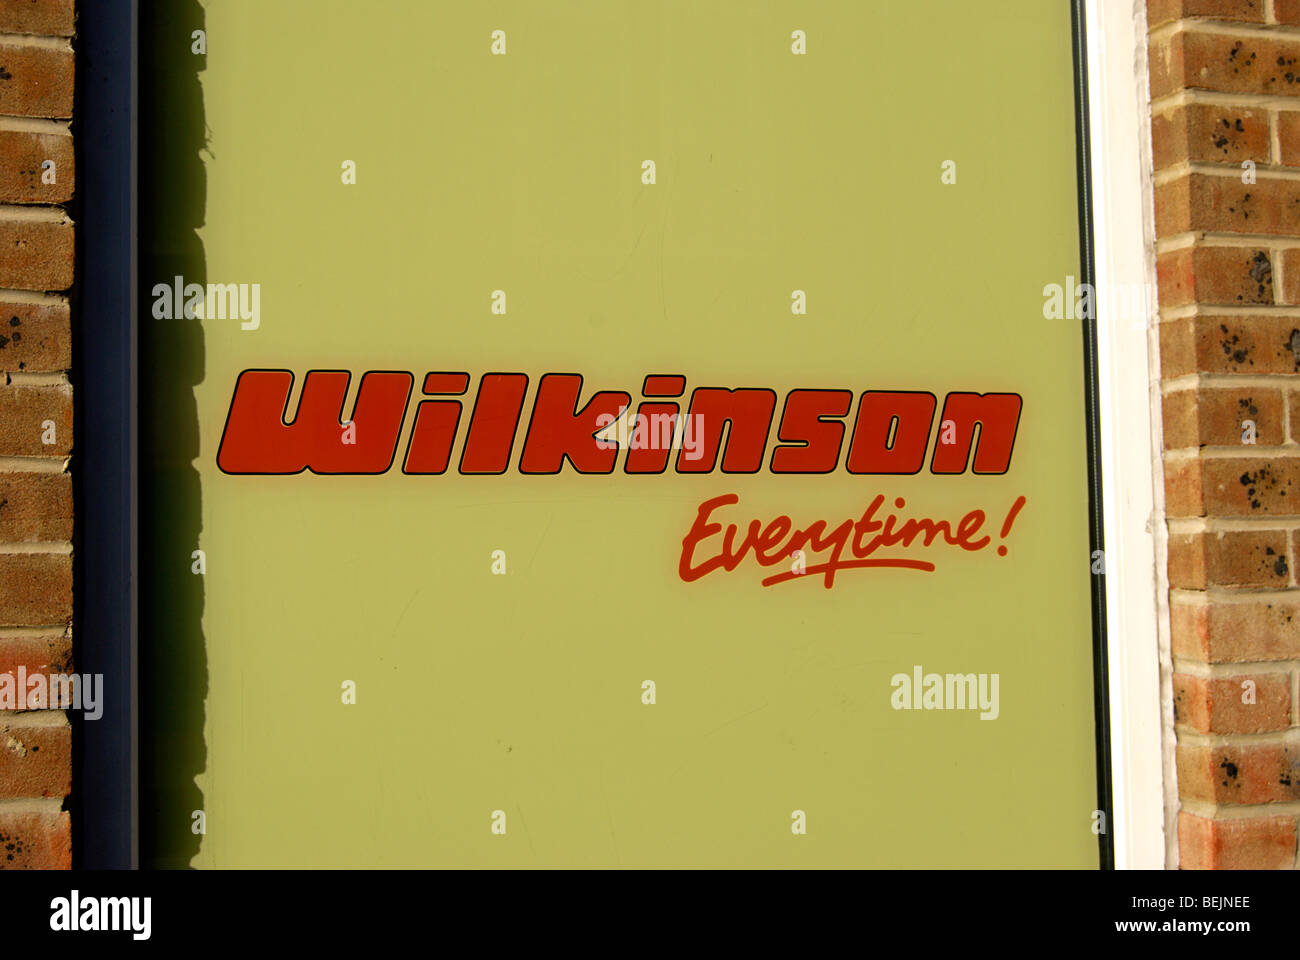 Wilkinson Everytime! Motto, die Schablone auf ein Schaufenster eines Ladens Wilkinsons in Kingston nach Themse, Surrey, england Stockfoto